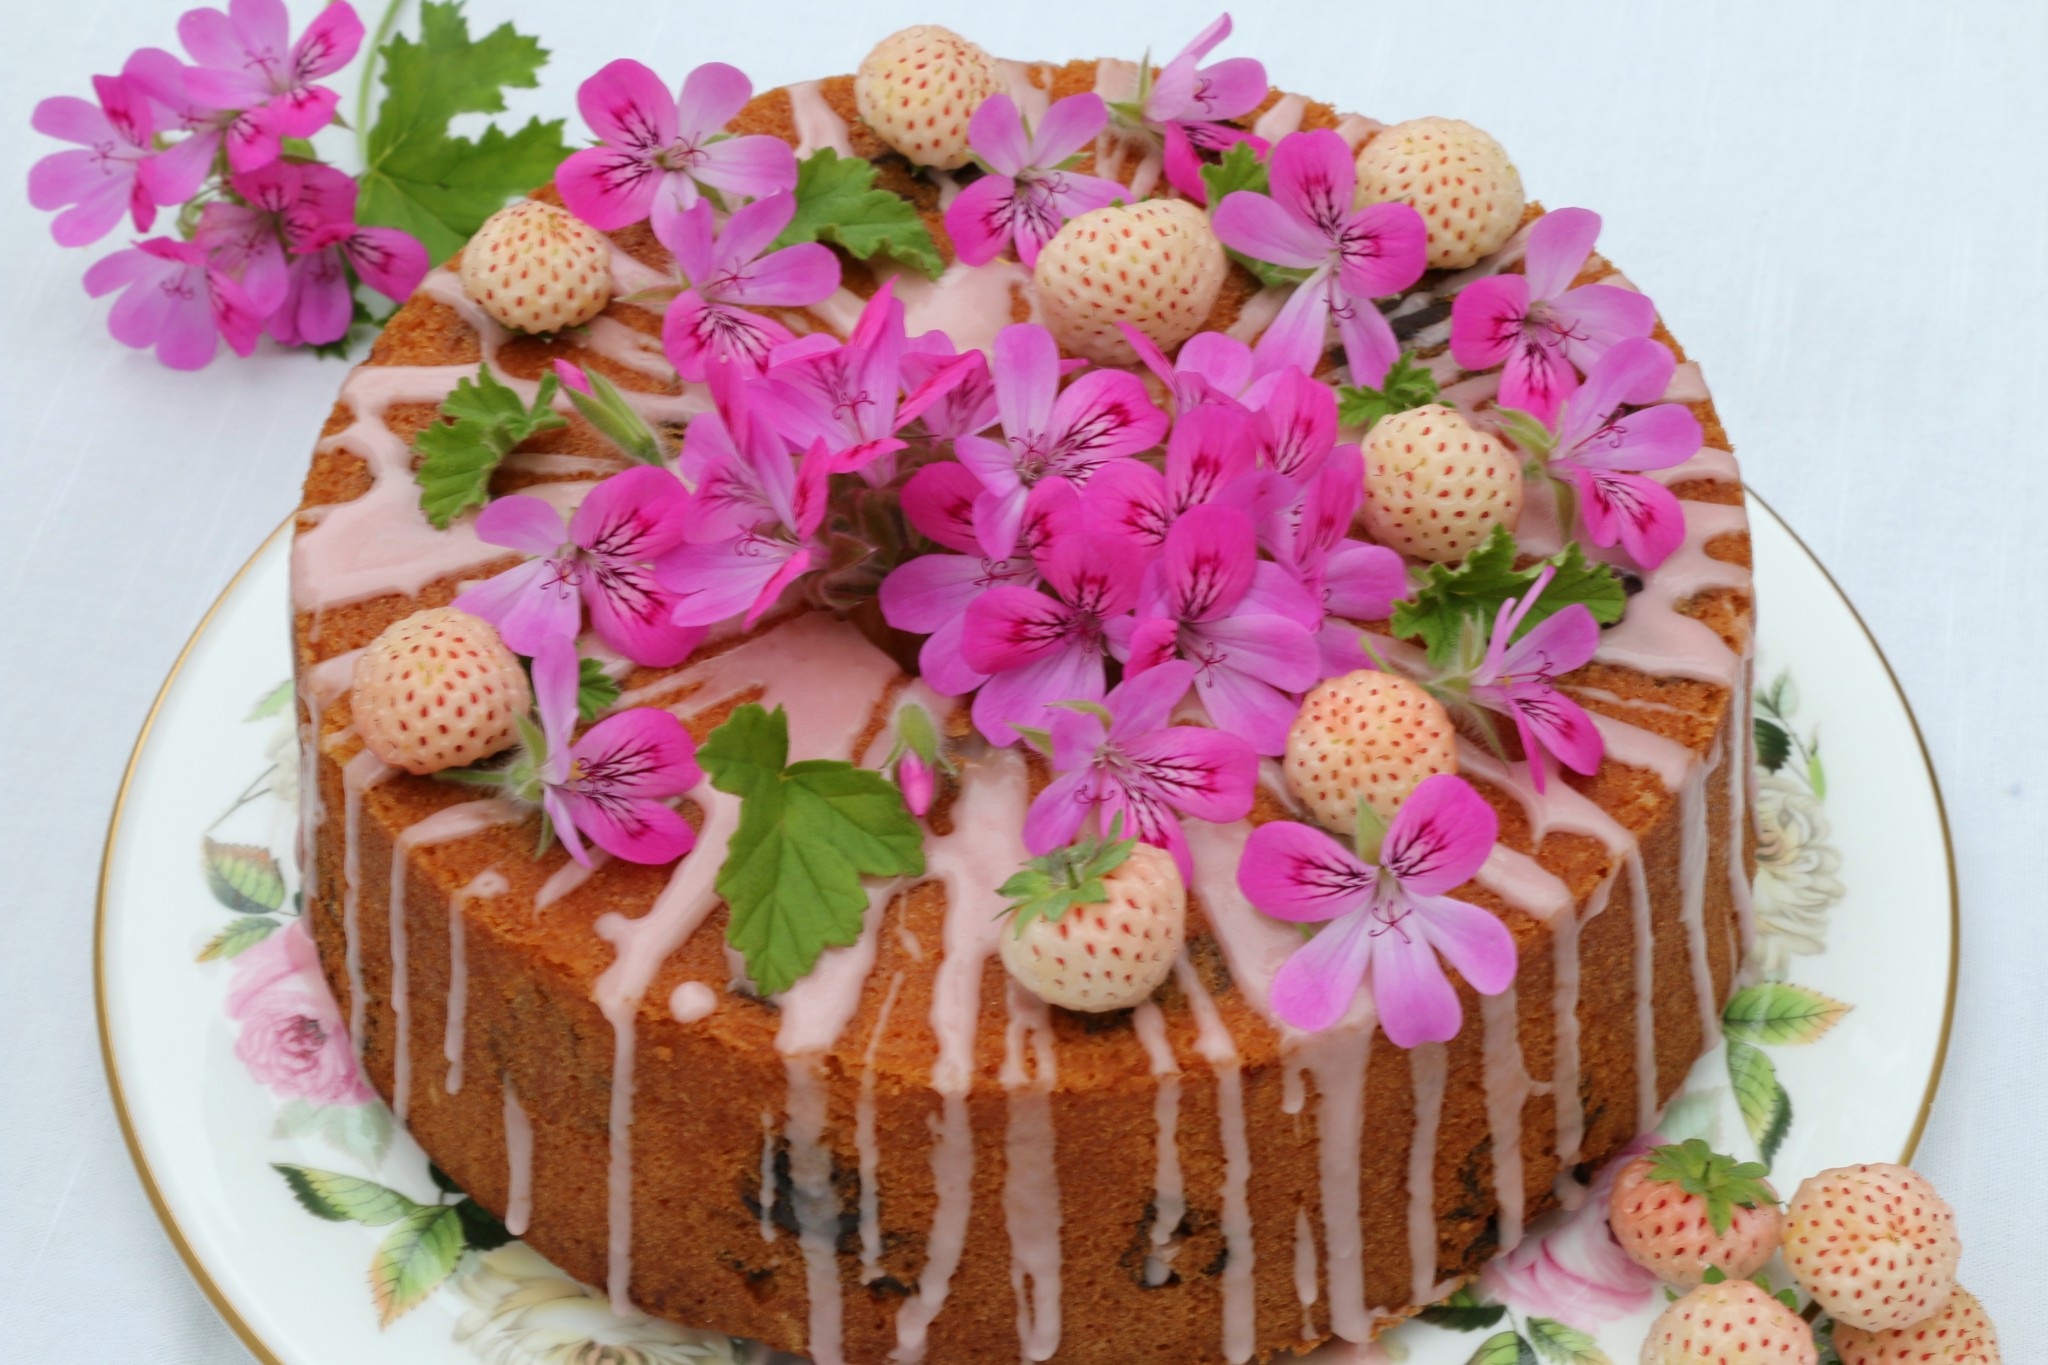 Summer Berry Cake With Rose Geranium Cream